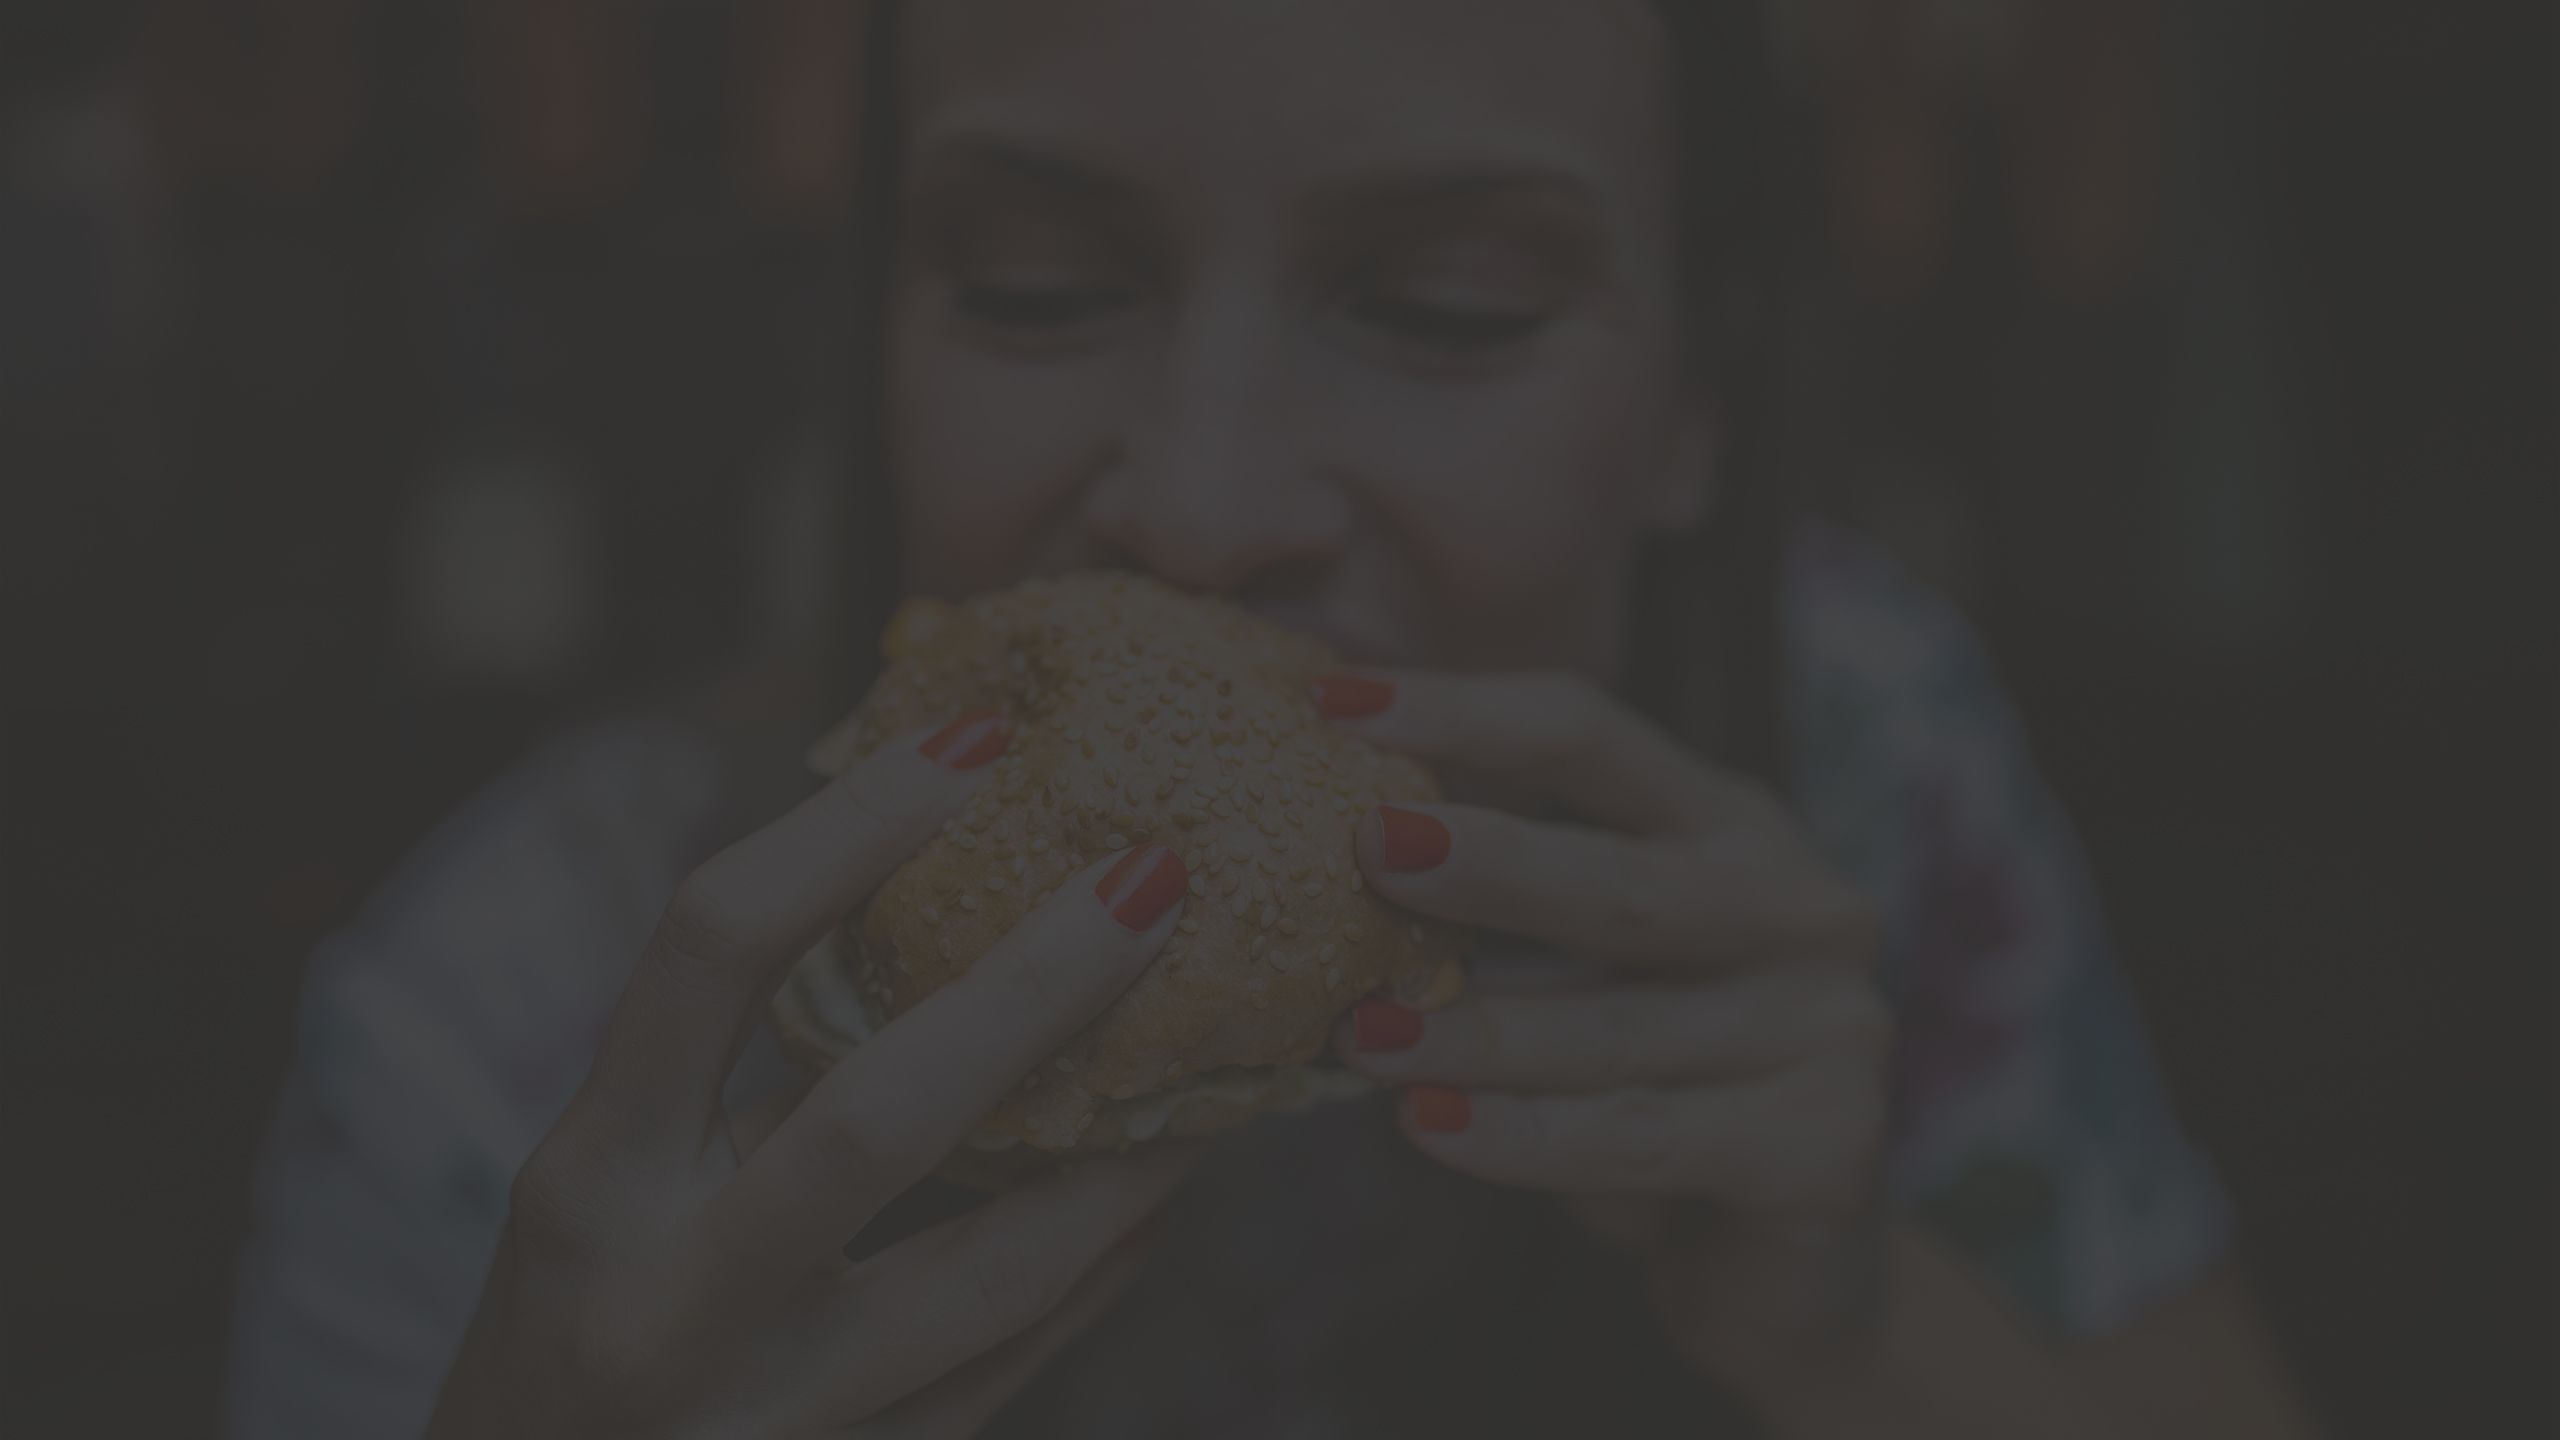 Woman eating a cheeseburger